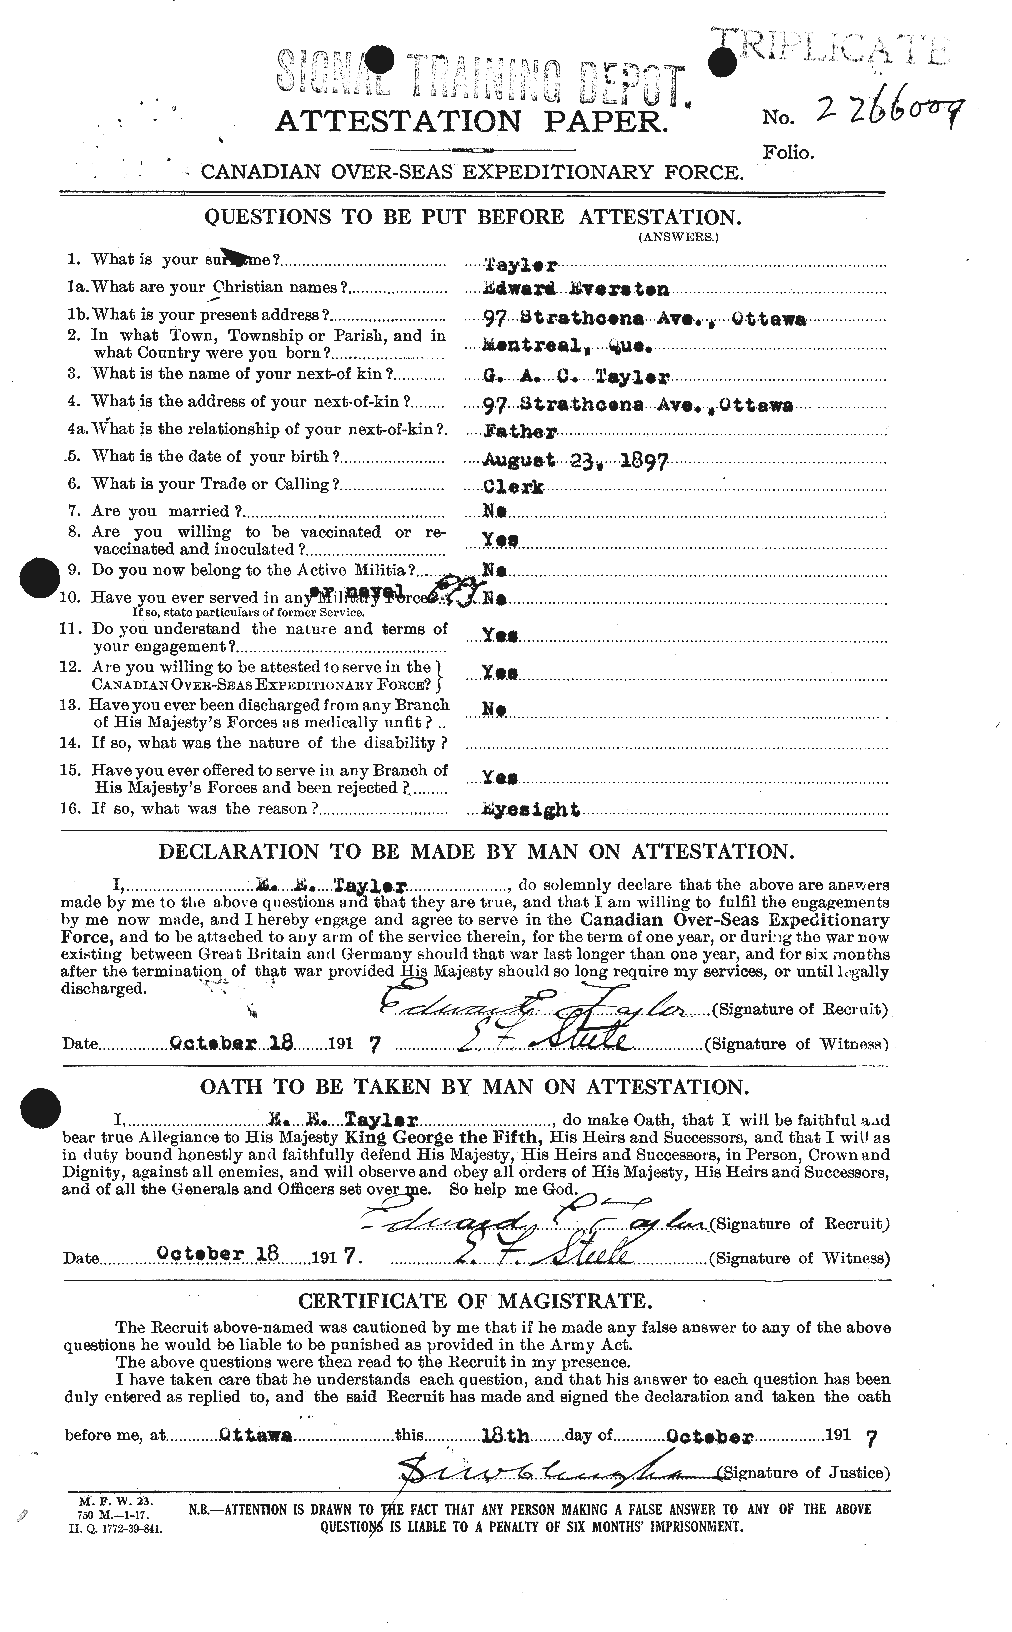 Dossiers du Personnel de la Première Guerre mondiale - CEC 627310a